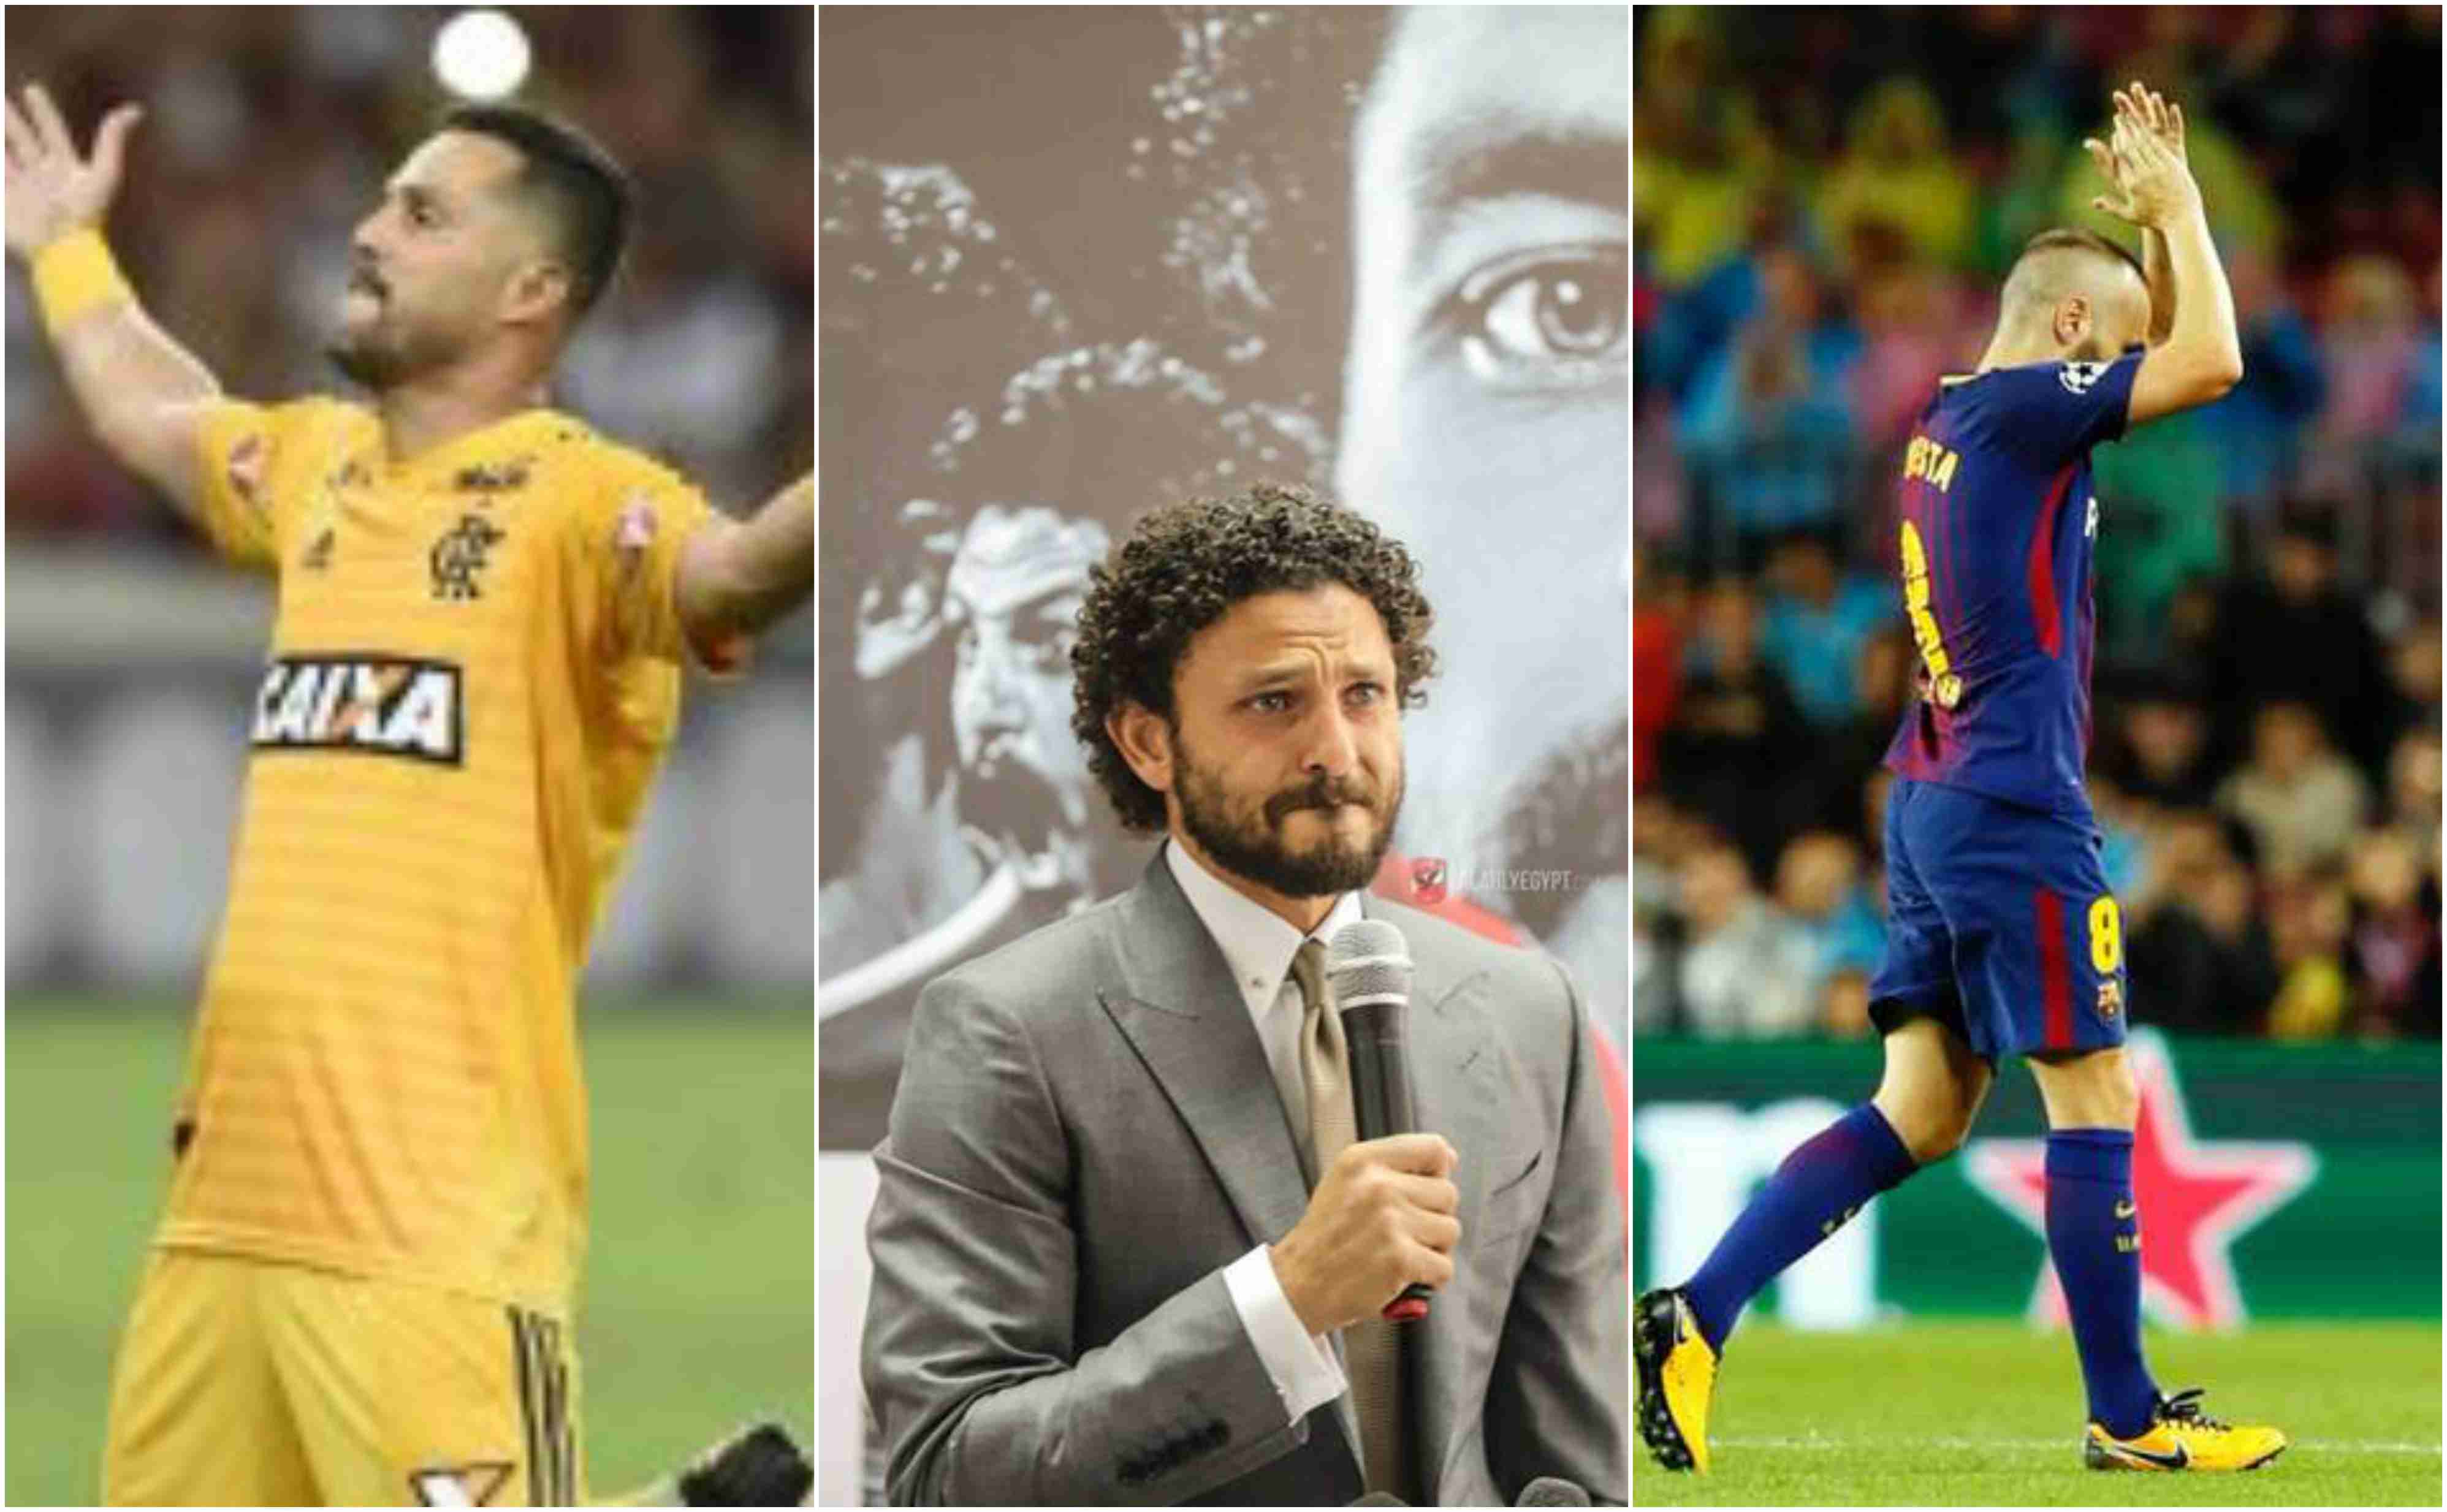 5 لاعبين حرمهم الاعتزال من التواجد في مونديال كأس العالم